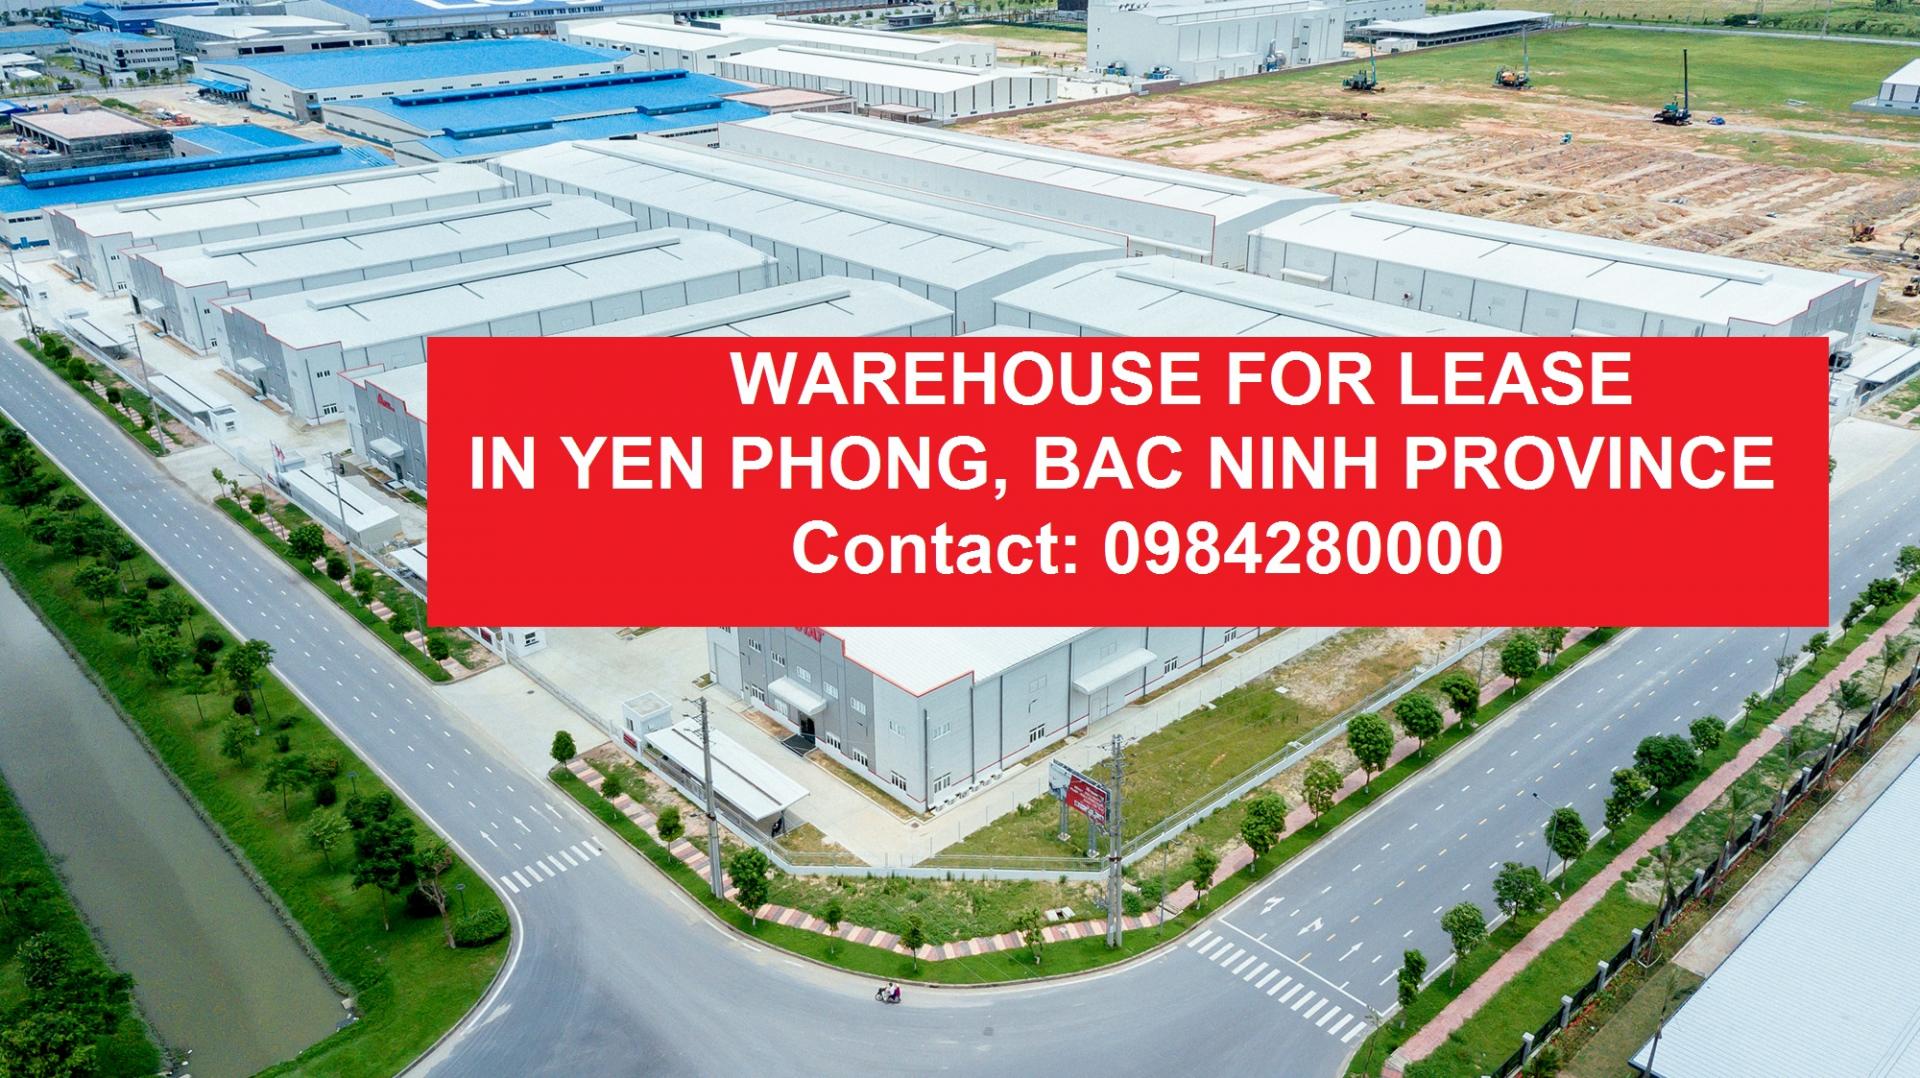 Cho thuê Nhà xưởng Trung tâm công nghiệp Yên Phong Bắc Ninh/Factory for Lease in Bac Ninh - Yen Phong Industrial Center